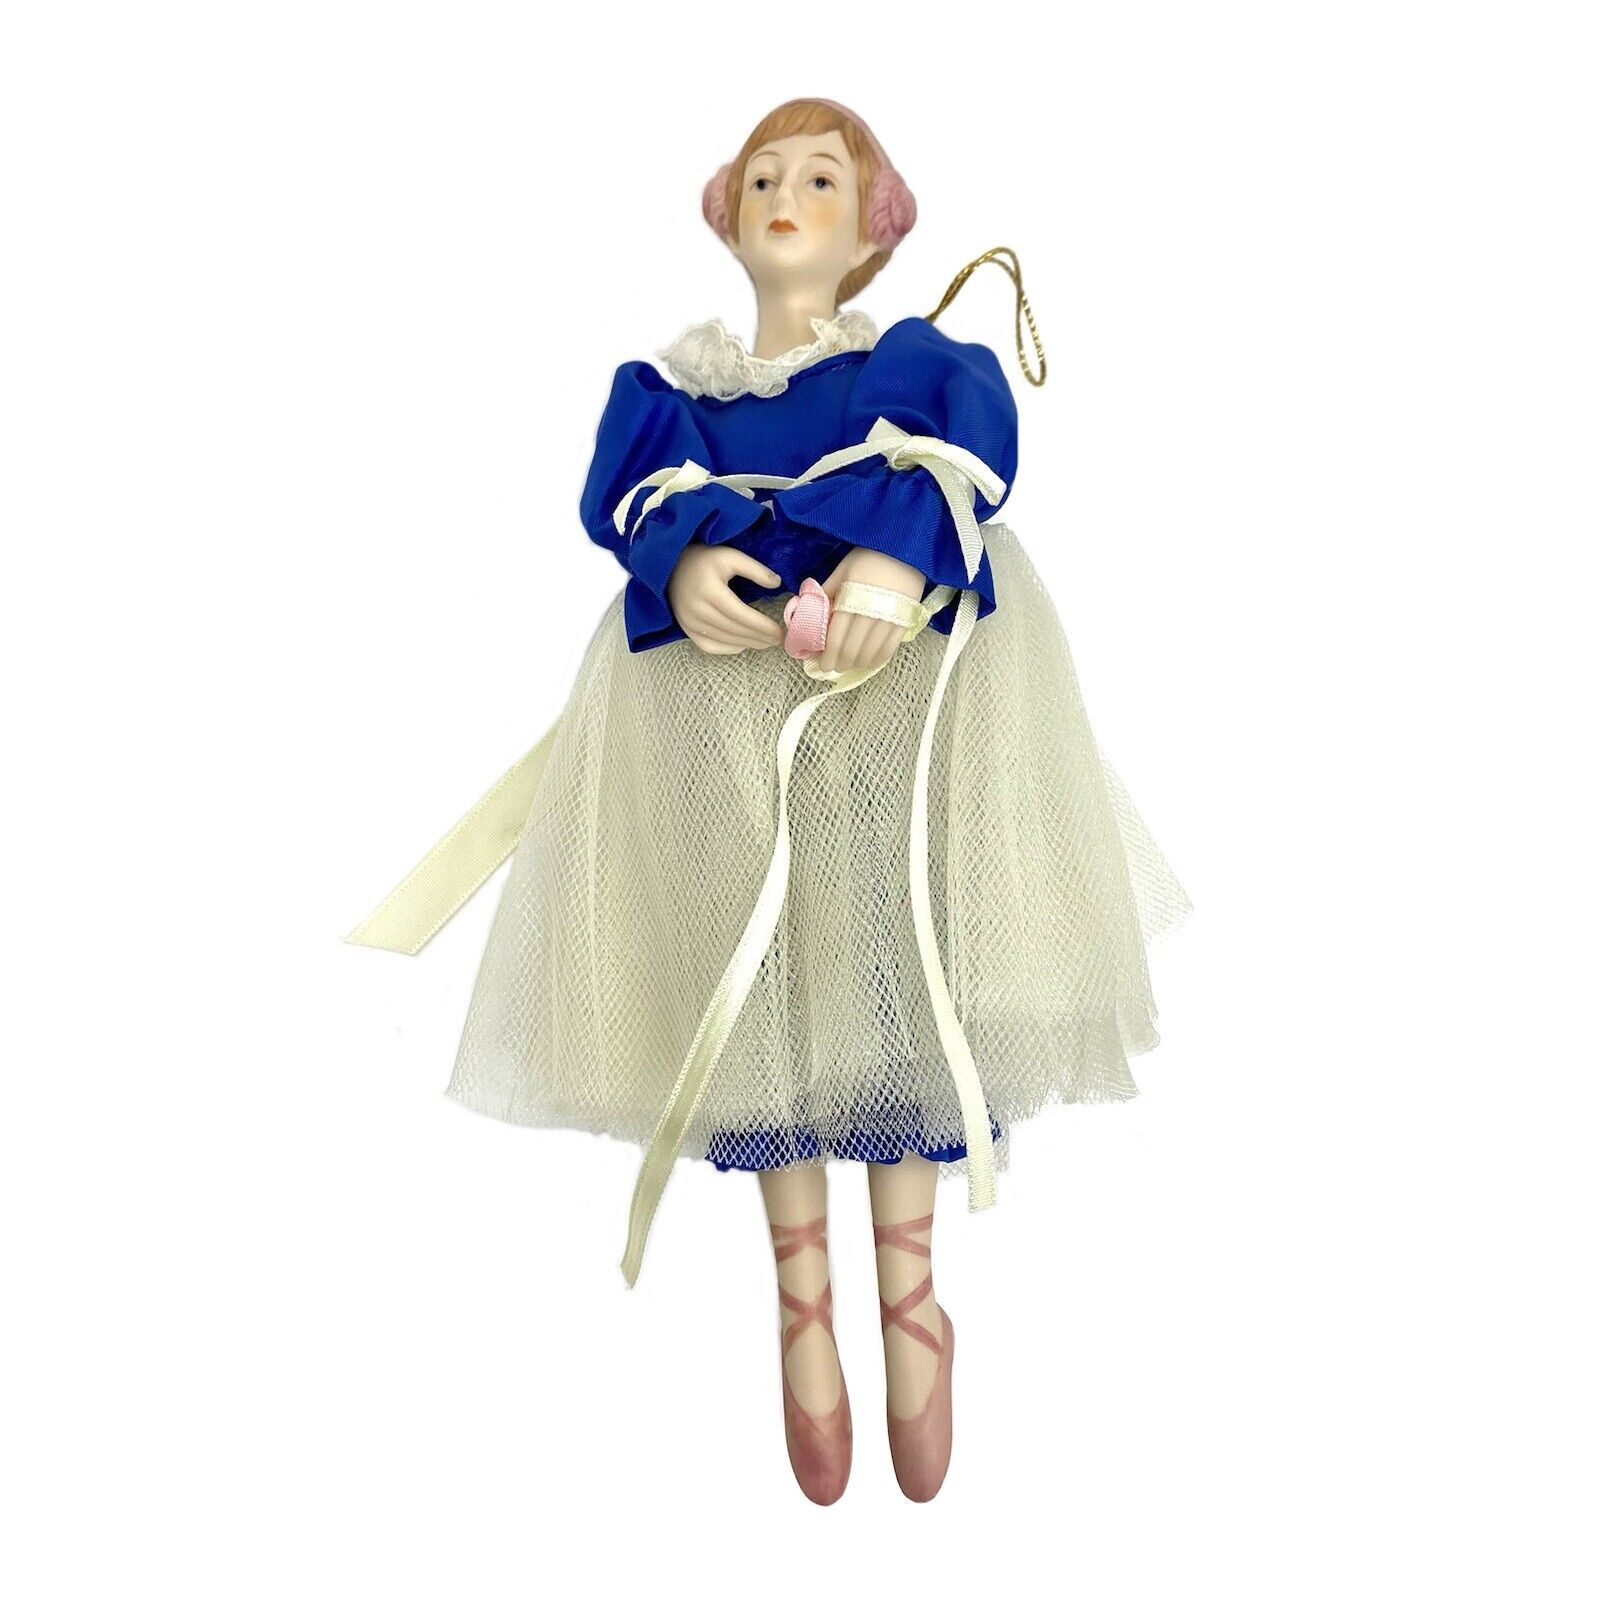 Vtg MCM MAID BALLERINA Fairy Porcelain Tulle Skirt Ornament Doll Figurine TAIWAN